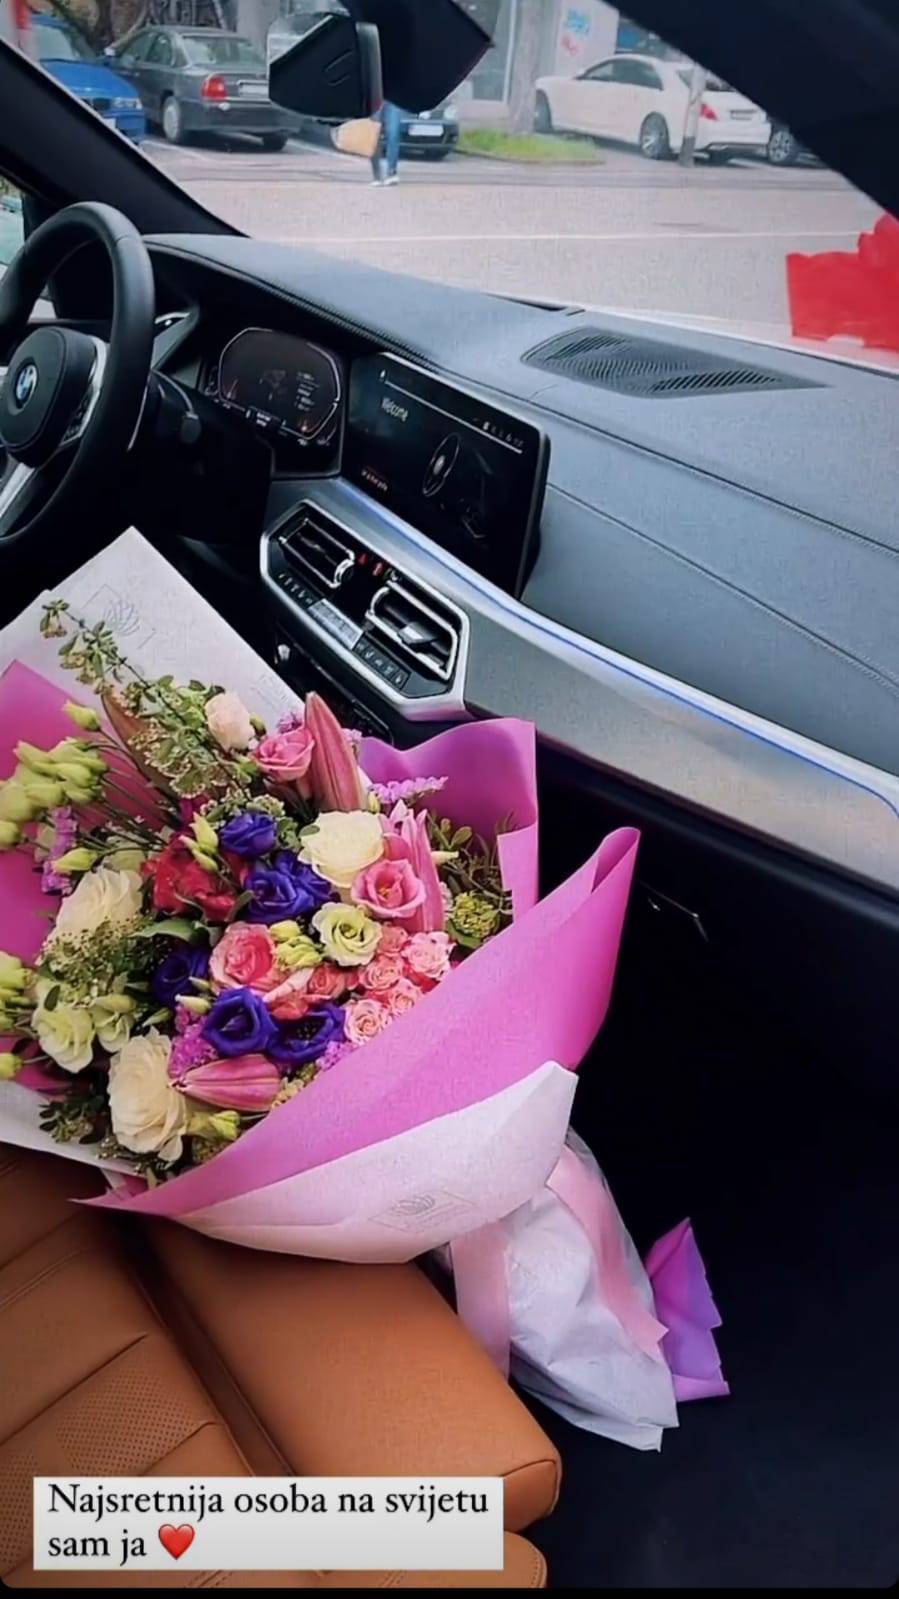 Kći tajkuna Lucija Šarić dobila Rolex i BMW za rođendan: 'Što mislite tko mi je kupio to sve?'